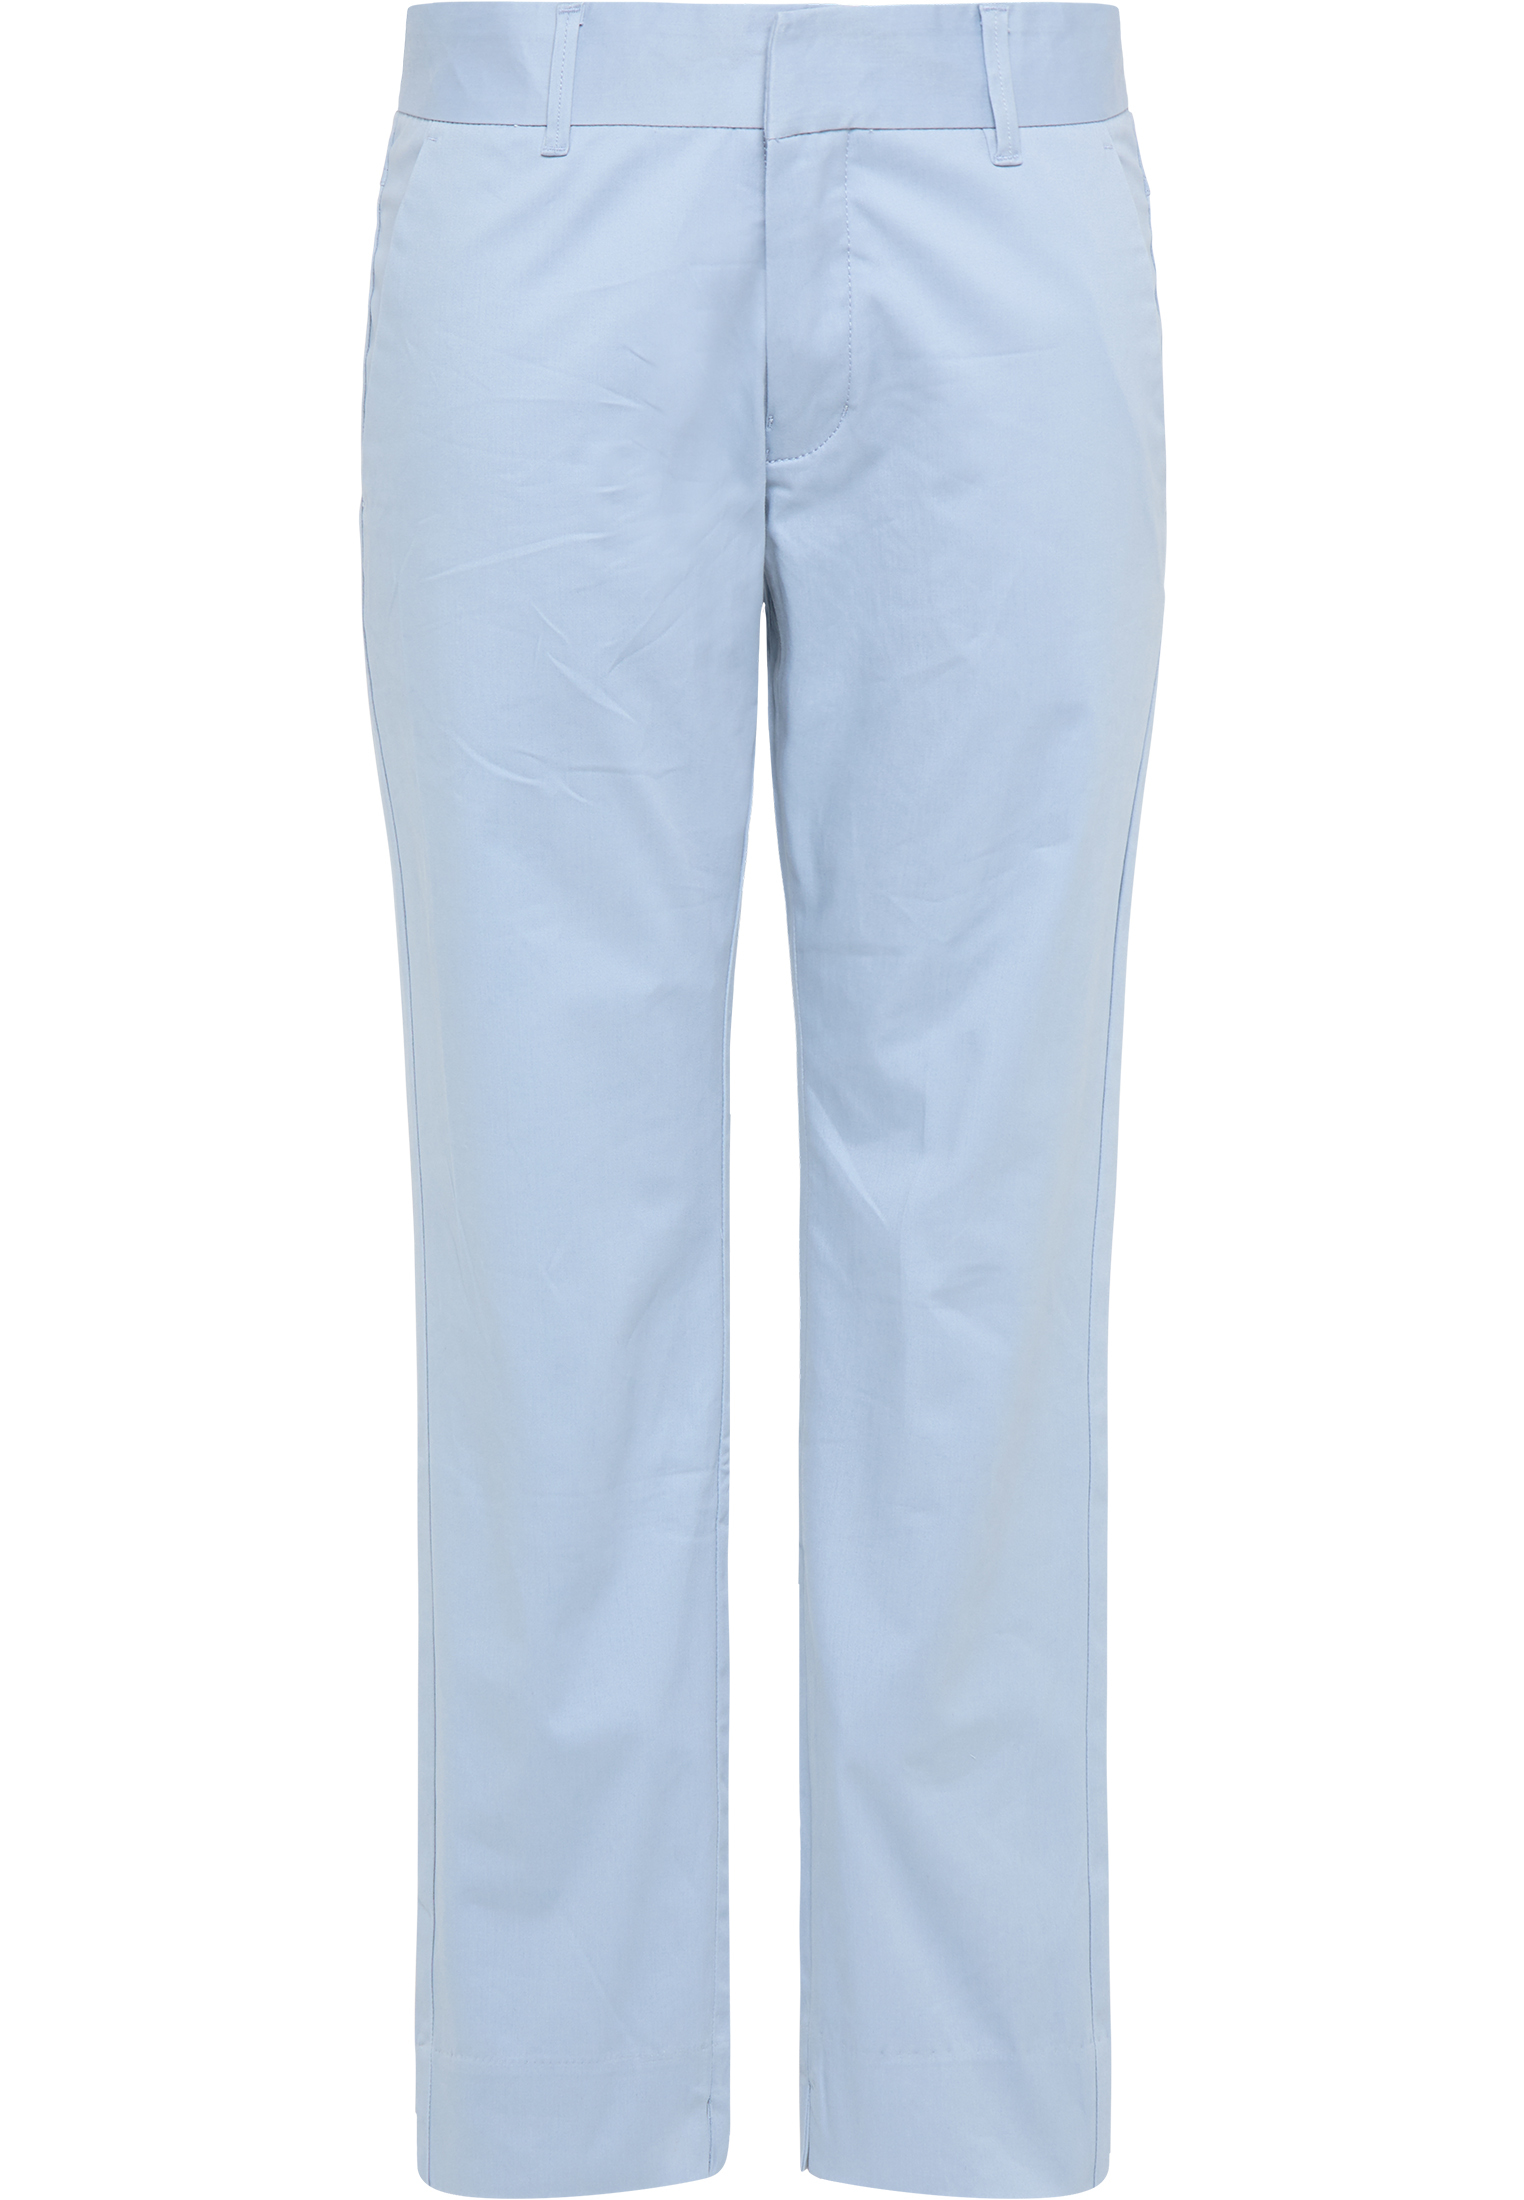 Abbigliamento Donna DreiMaster Maritim Pantaloni in Blu Chiaro 